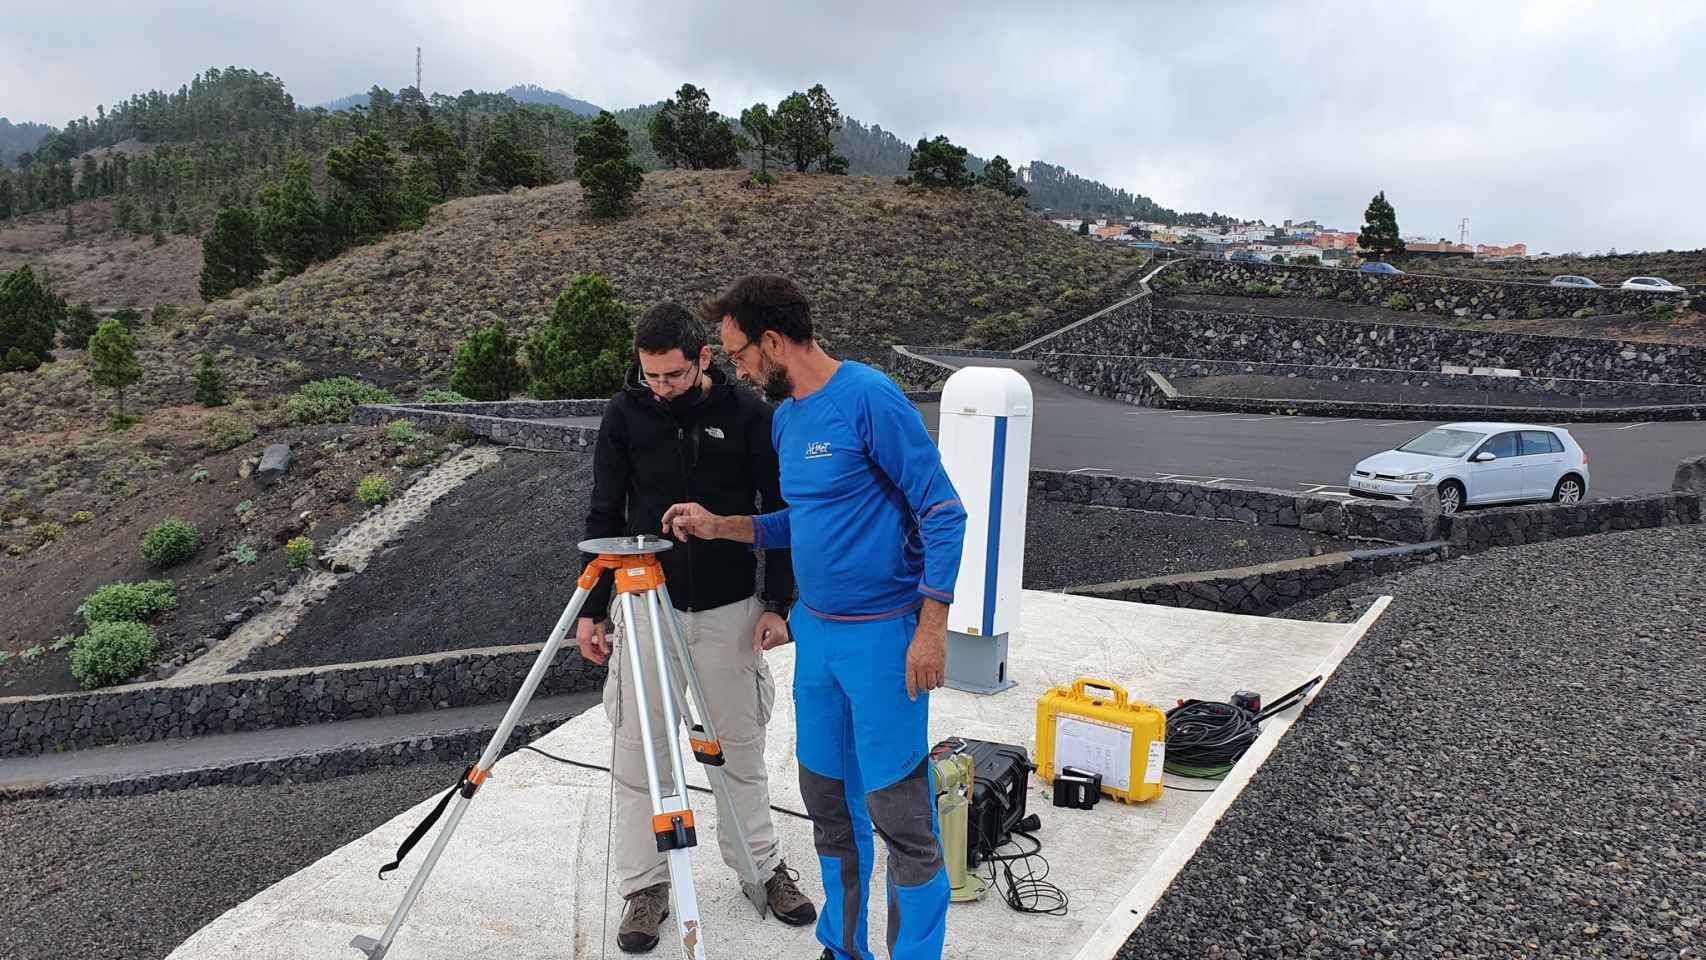 El vallisoletano Carlos Toledano, con sudadera negra, en La Palma, realizando las mediciones